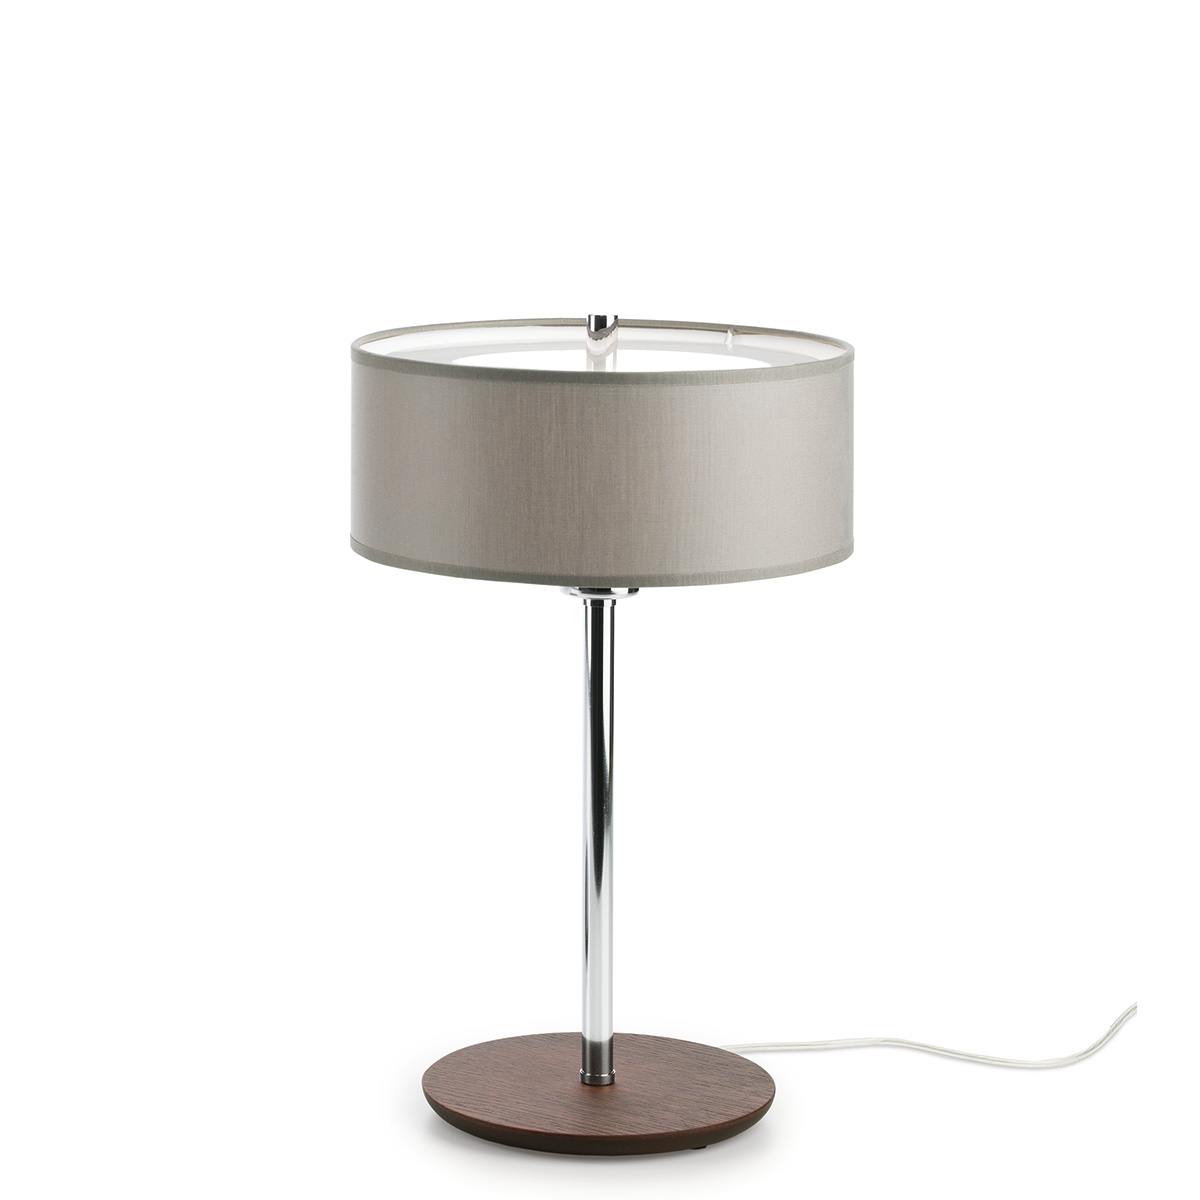 Επιτραπέζιο φωτιστικό OVNI table lamp with shade